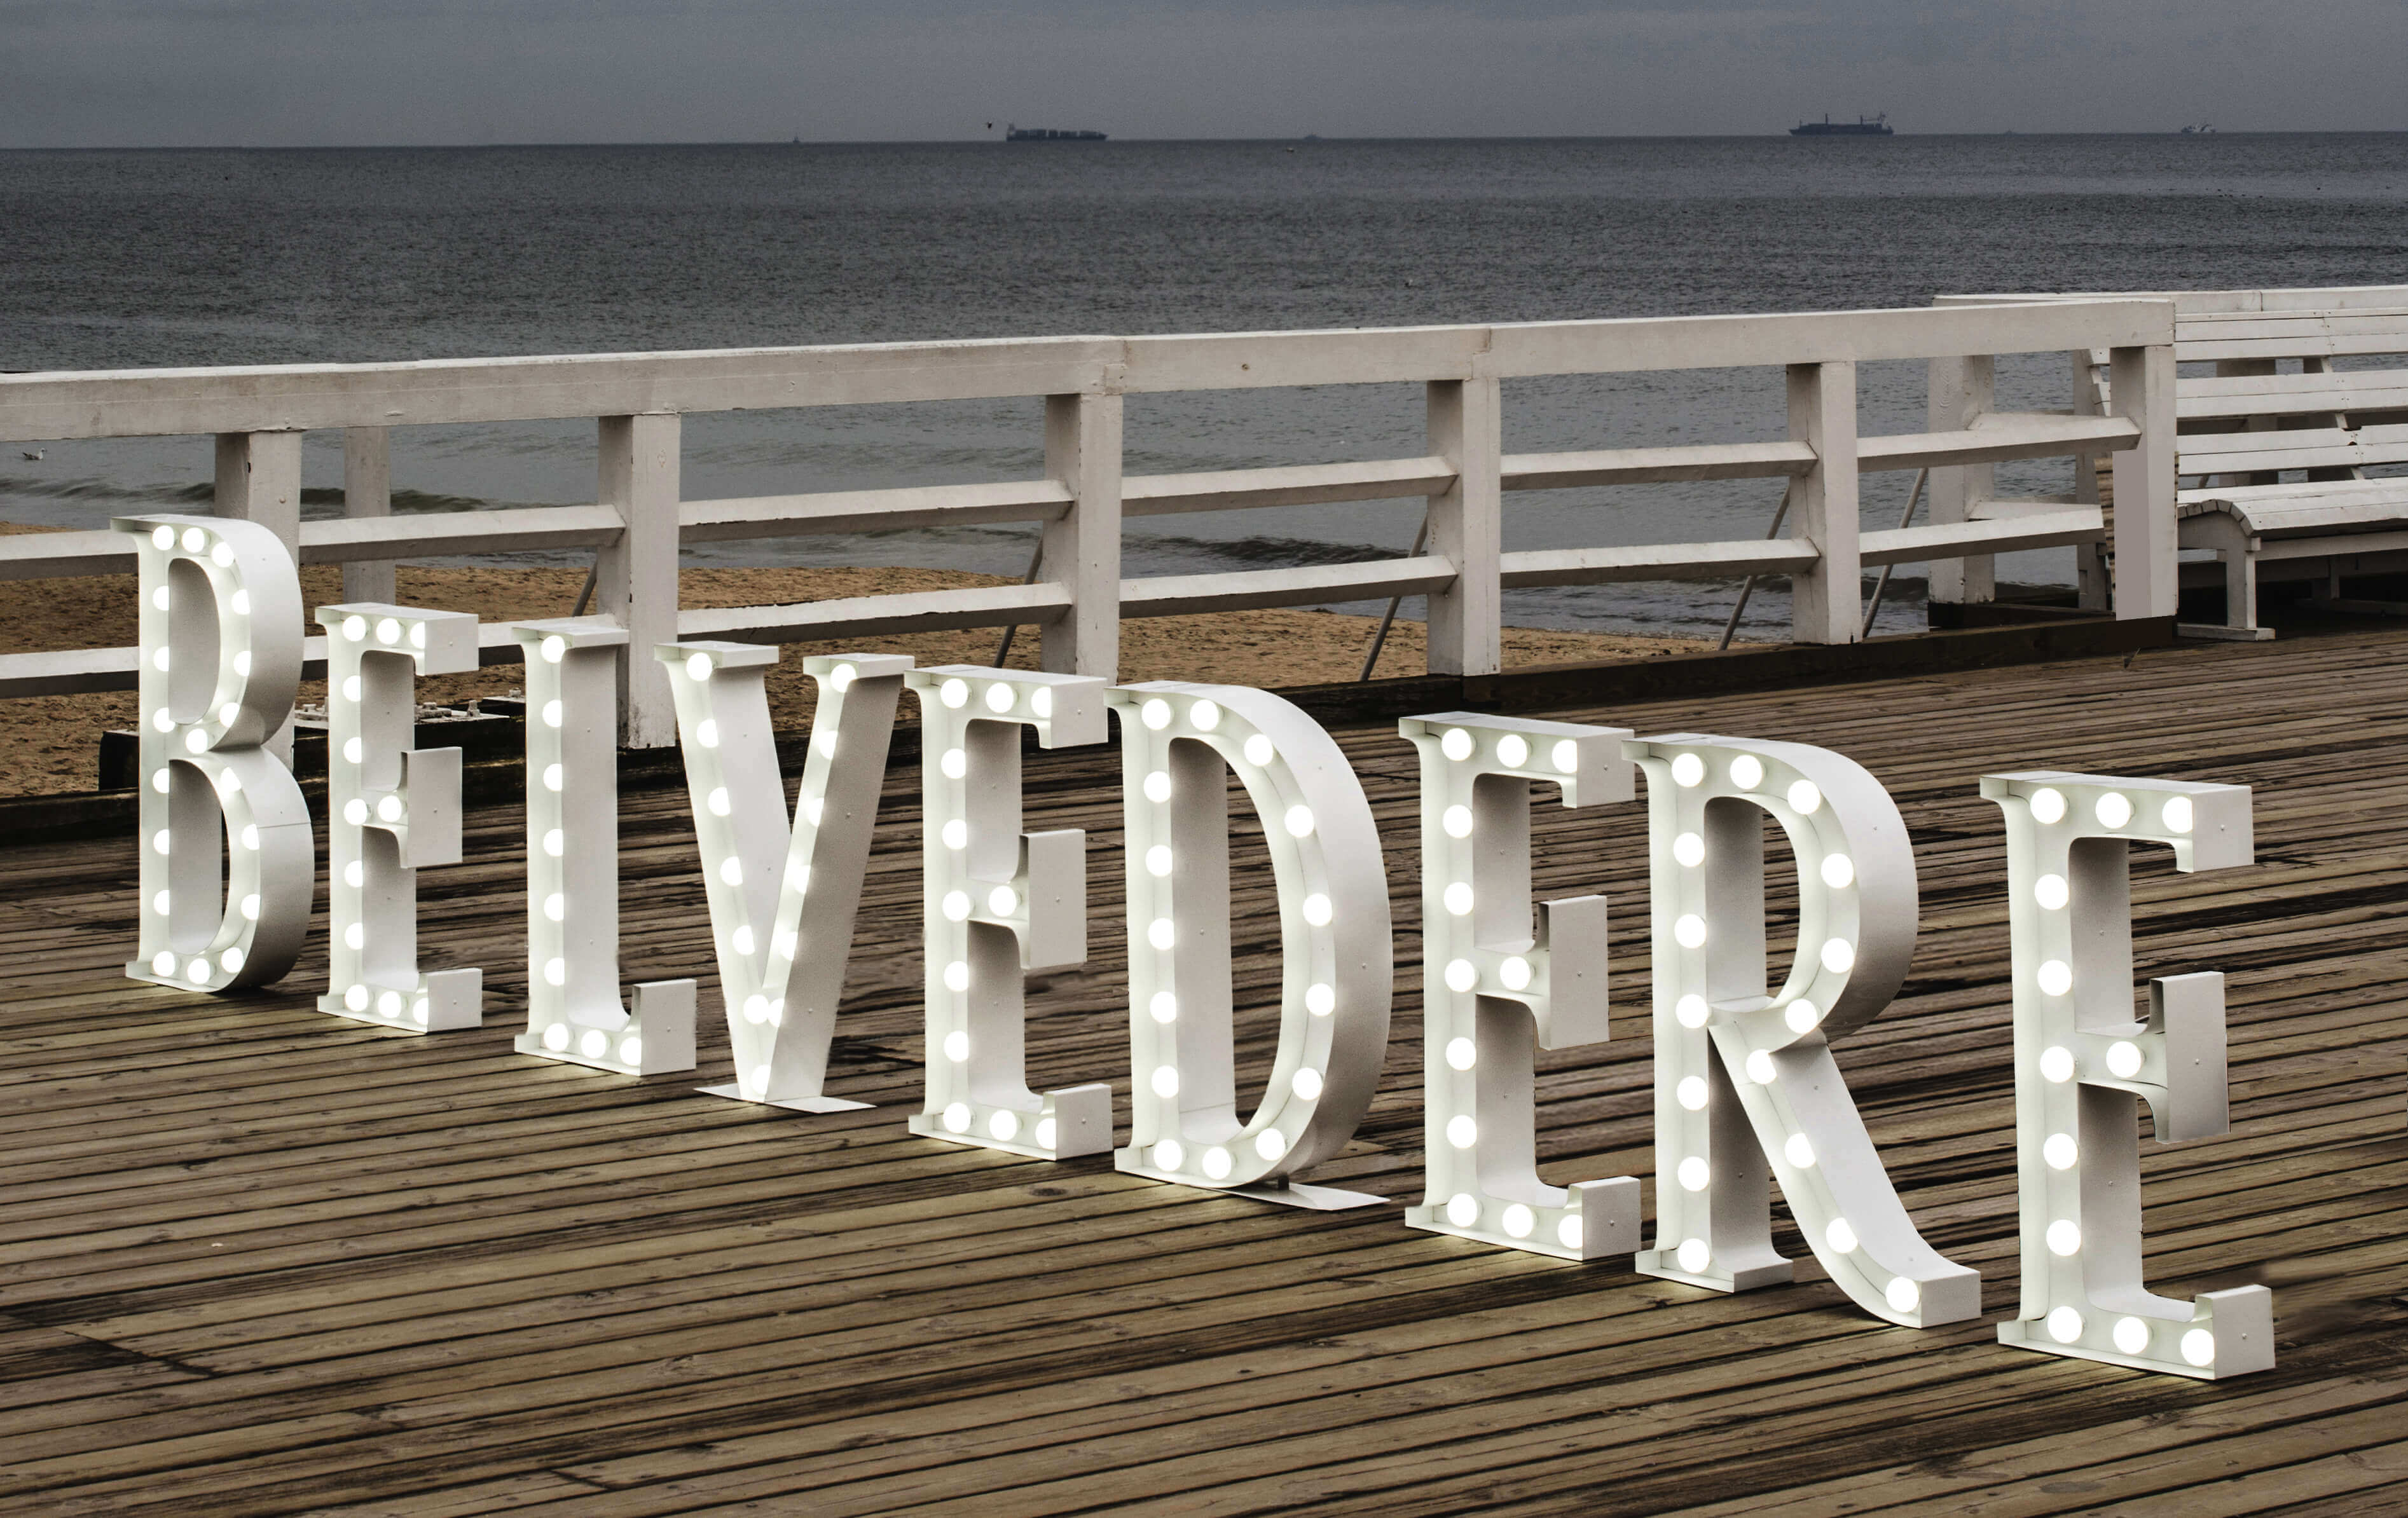 Belvédère - Belvedere - lettres debout avec ampoules sur la jetée